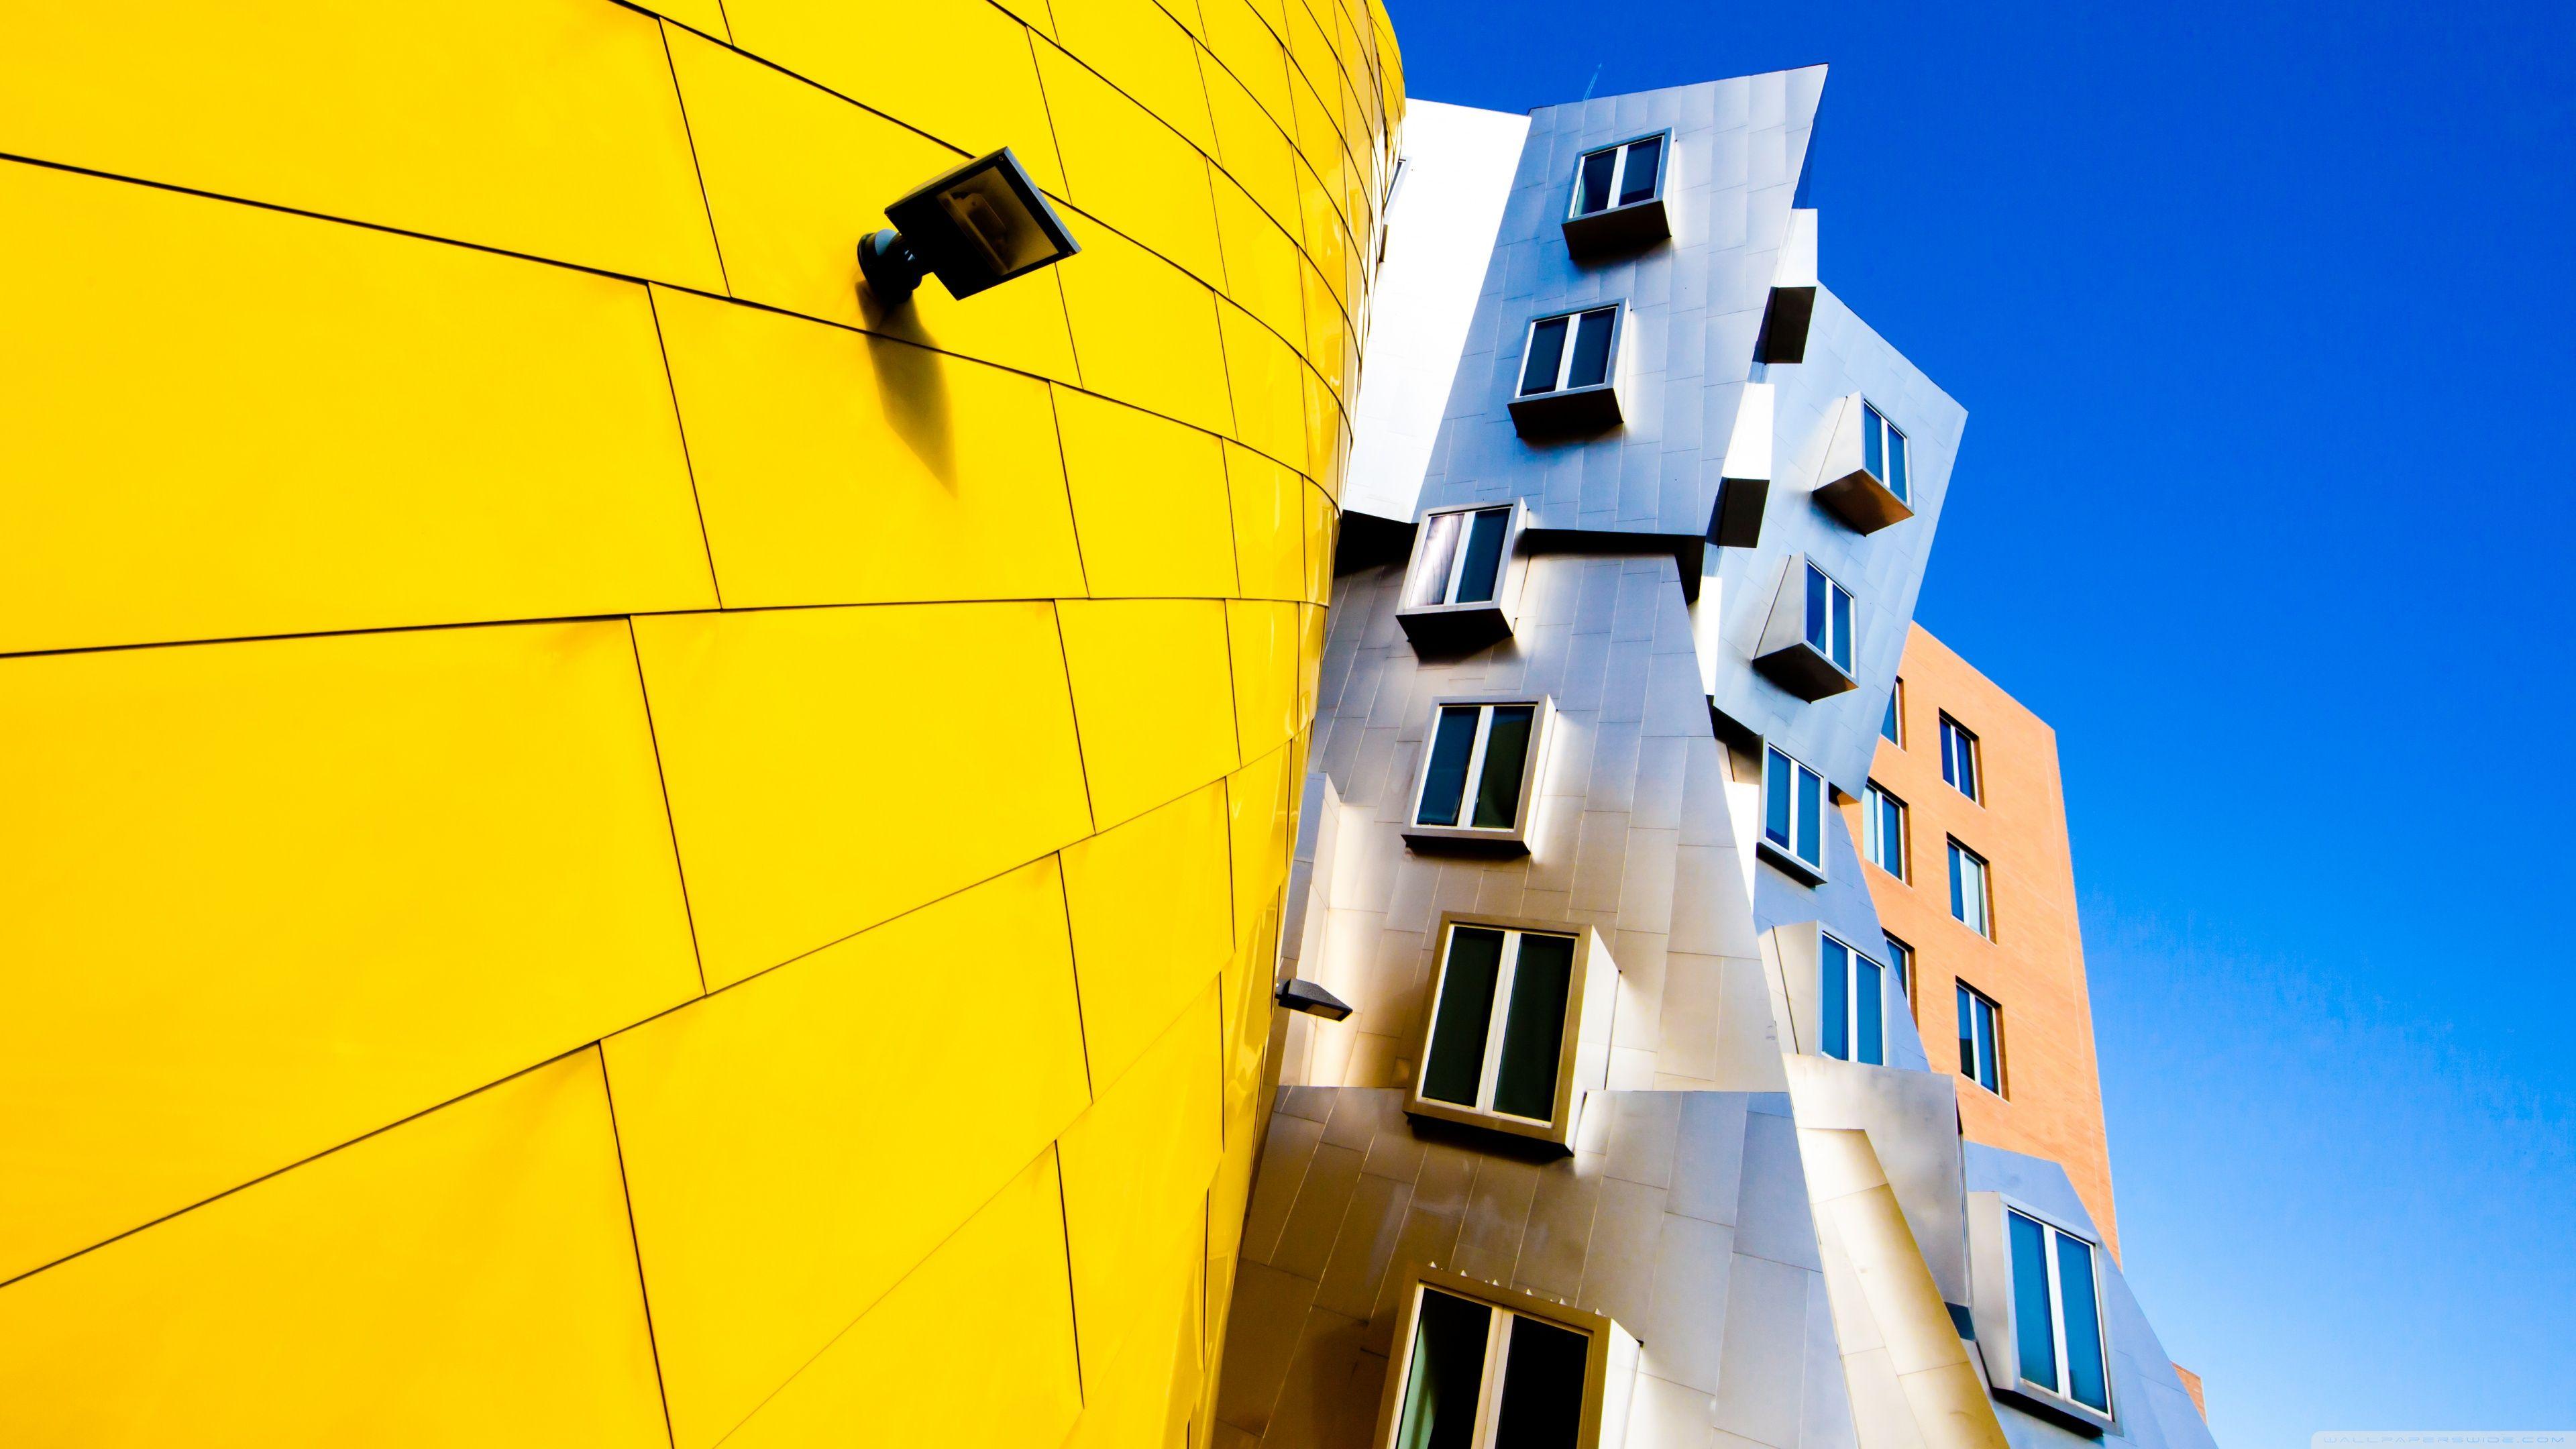 Frank Gehry Architecture HD desktop wallpaper, Widescreen, High